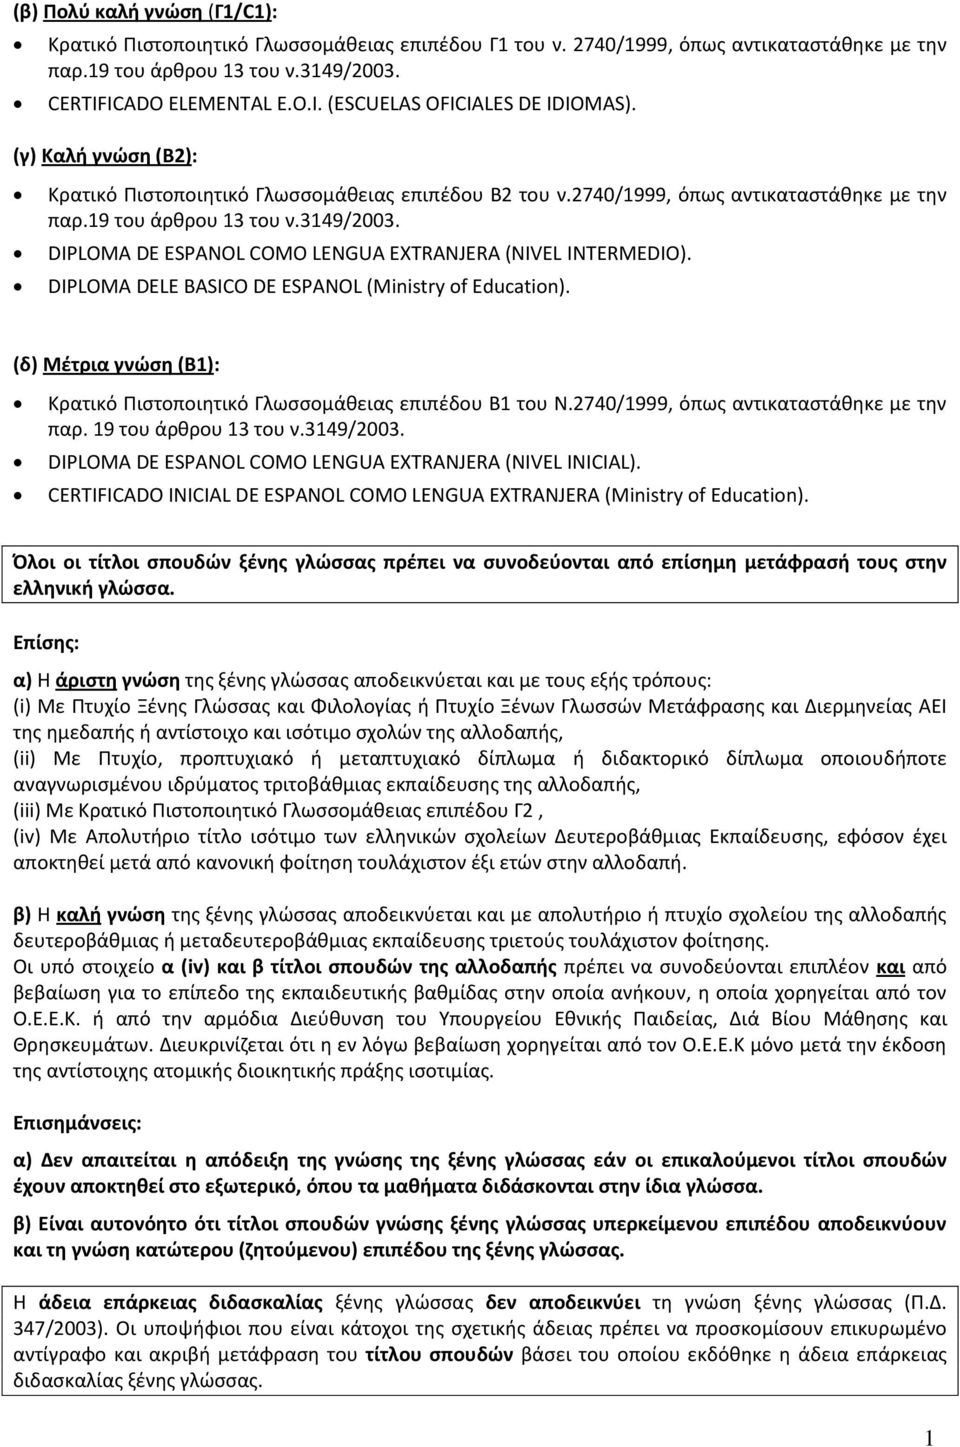 DIPLOMA DELE BASICO DE ESPANOL (Ministry of Education). (δ) Μέτρια γνώση (Β1): Κρατικό Πιστοποιητικό Γλωσσομάθειας επιπέδου Β1 του Ν.2740/1999, όπως αντικαταστάθηκε με την παρ. 19 του άρθρου 13 του ν.